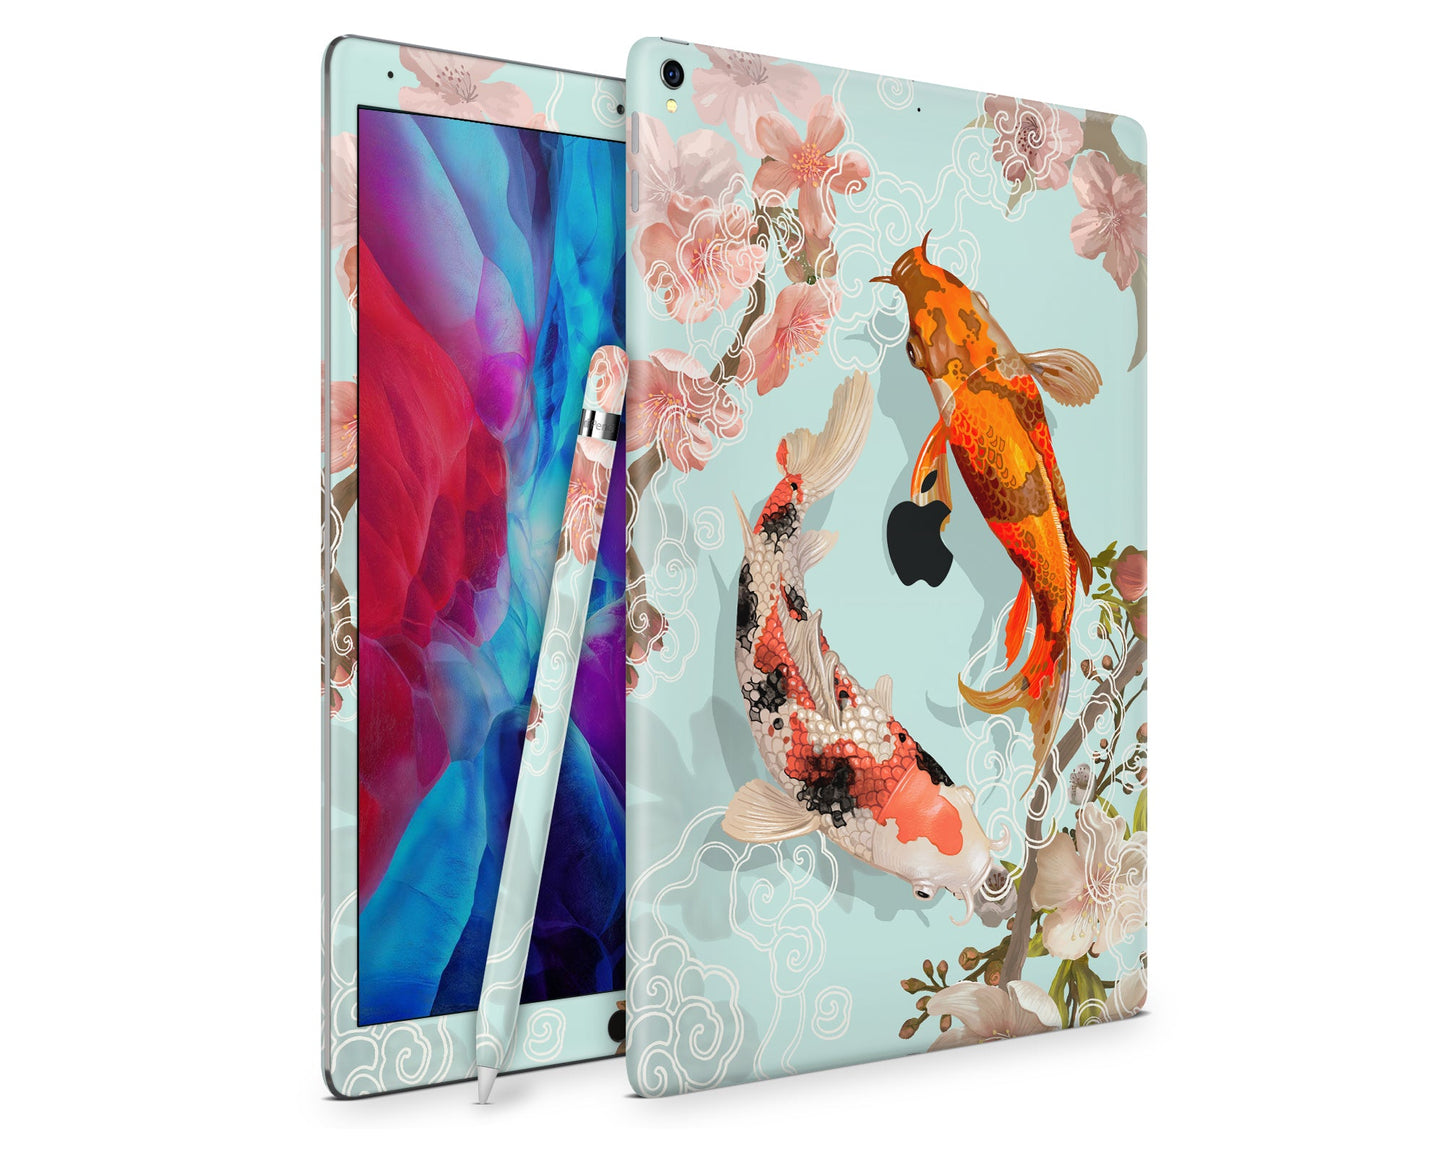 Lux Skins iPad Yin Yang Koi Rose Light iPad Pro 12.9" Gen 5 Skins - Art Artwork Skin